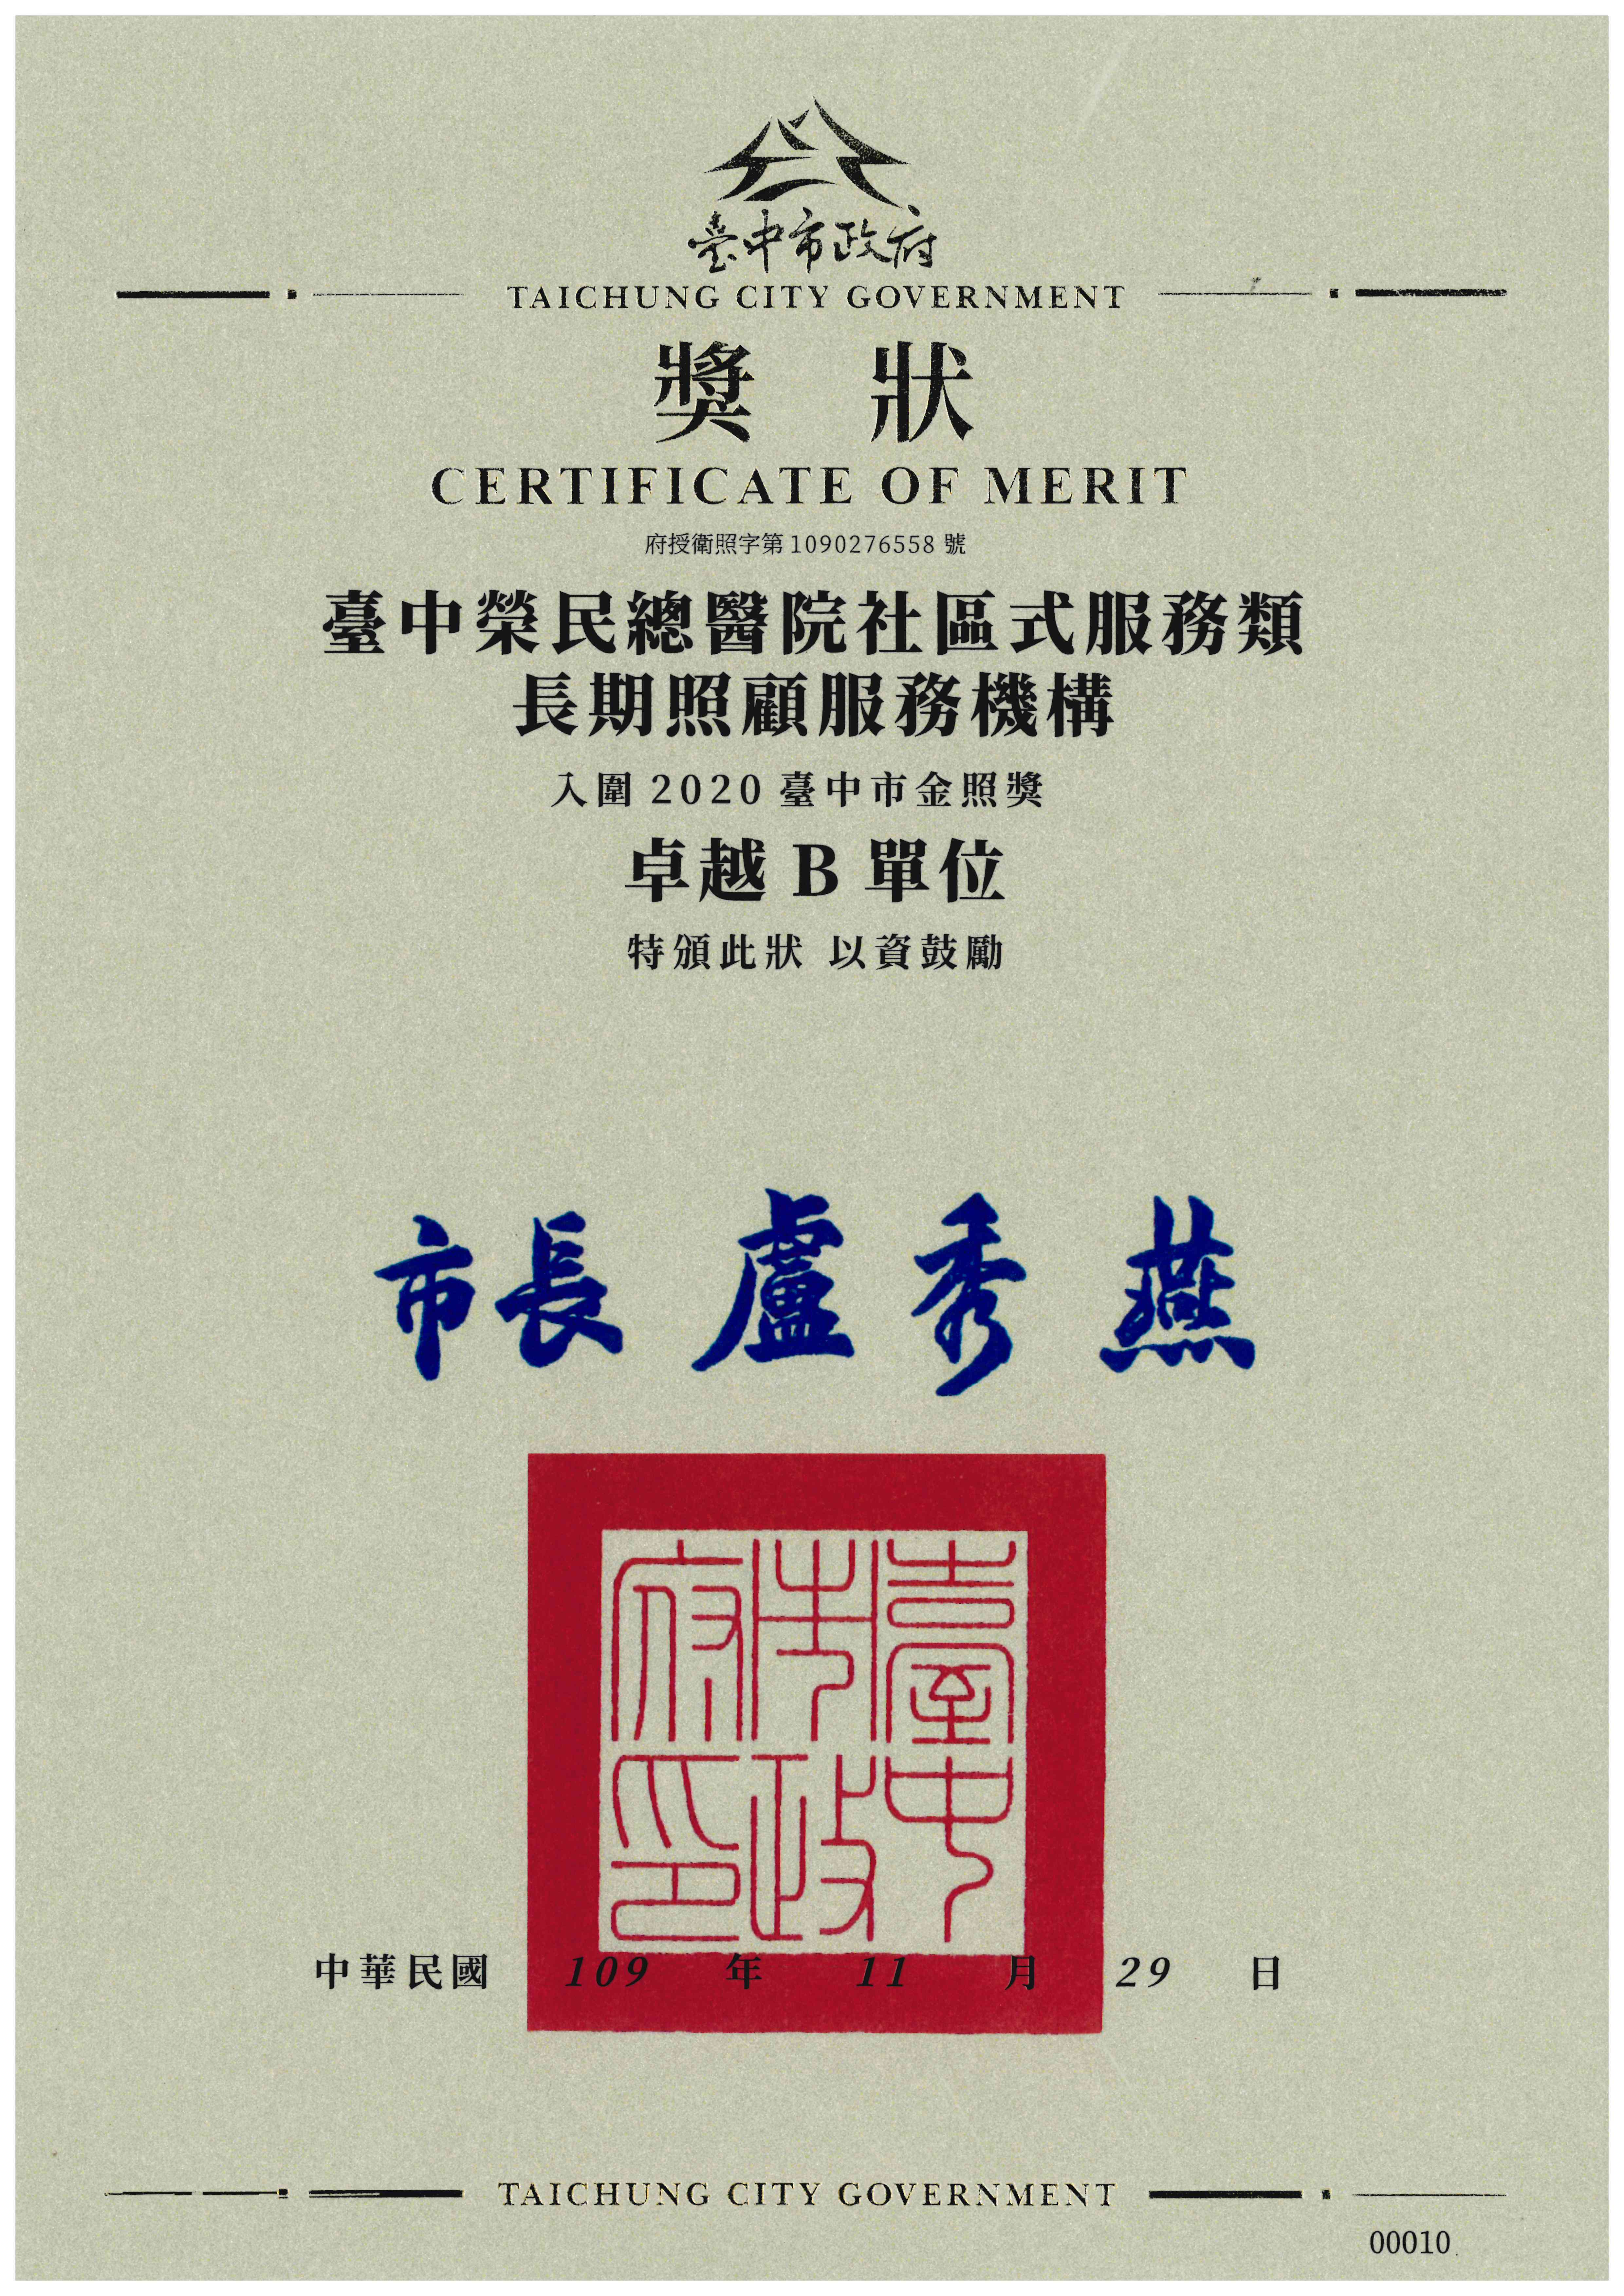 本院日間照顧中心獲臺中市政府評為第三屆金照獎卓越B單位第一名。(高齡醫學中心)